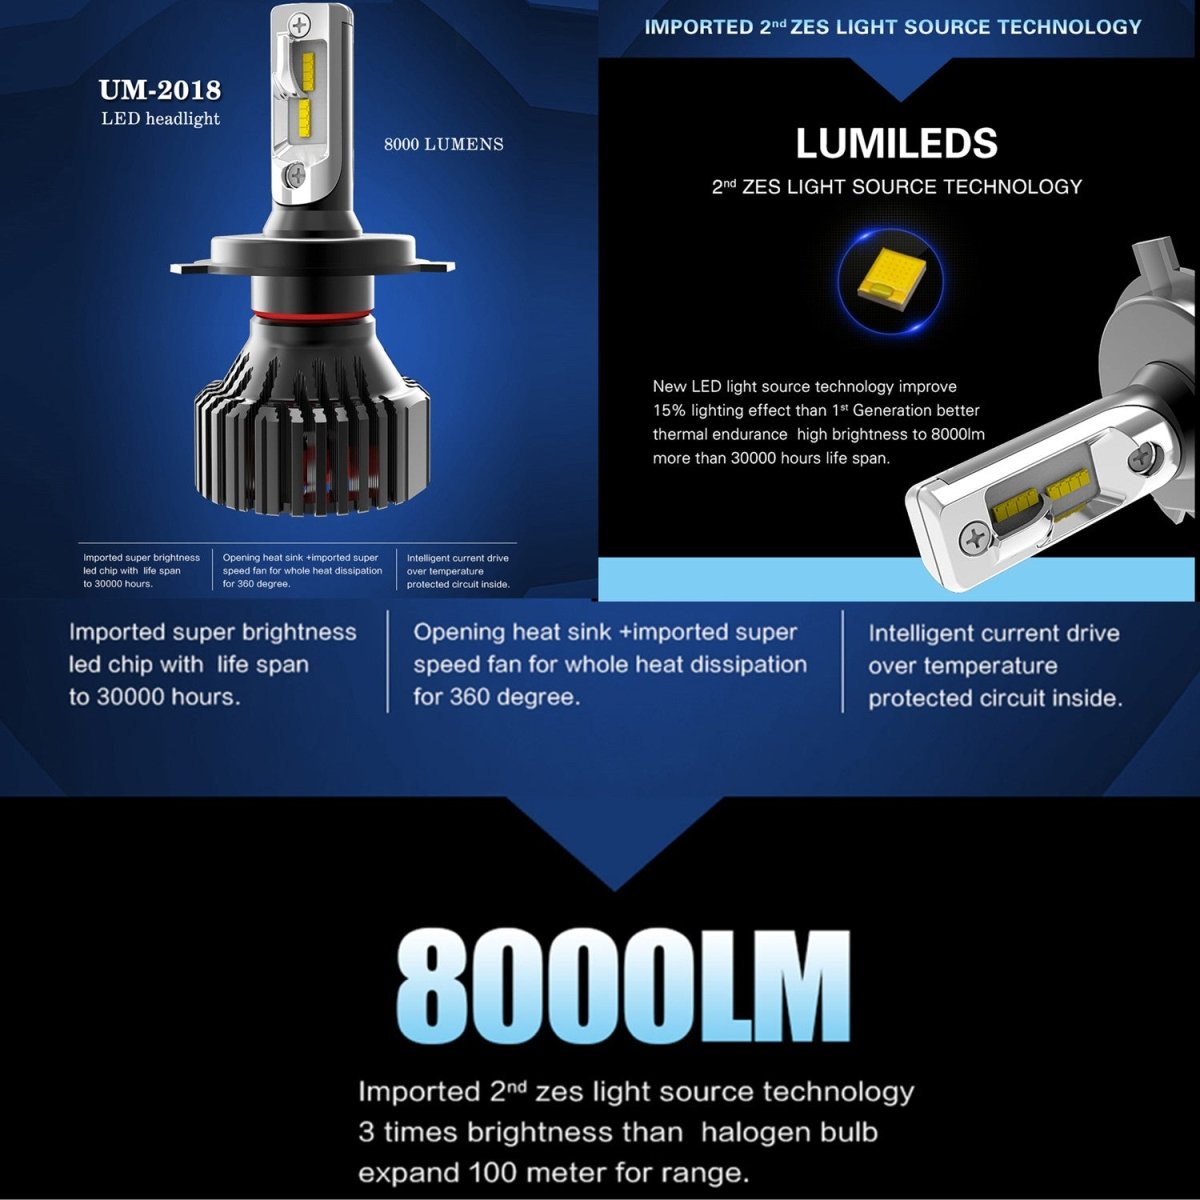 H7 LED Kits Bulbs Fog Lights for Cars, Trucks, 6500K Xenon White -Alla Lighting